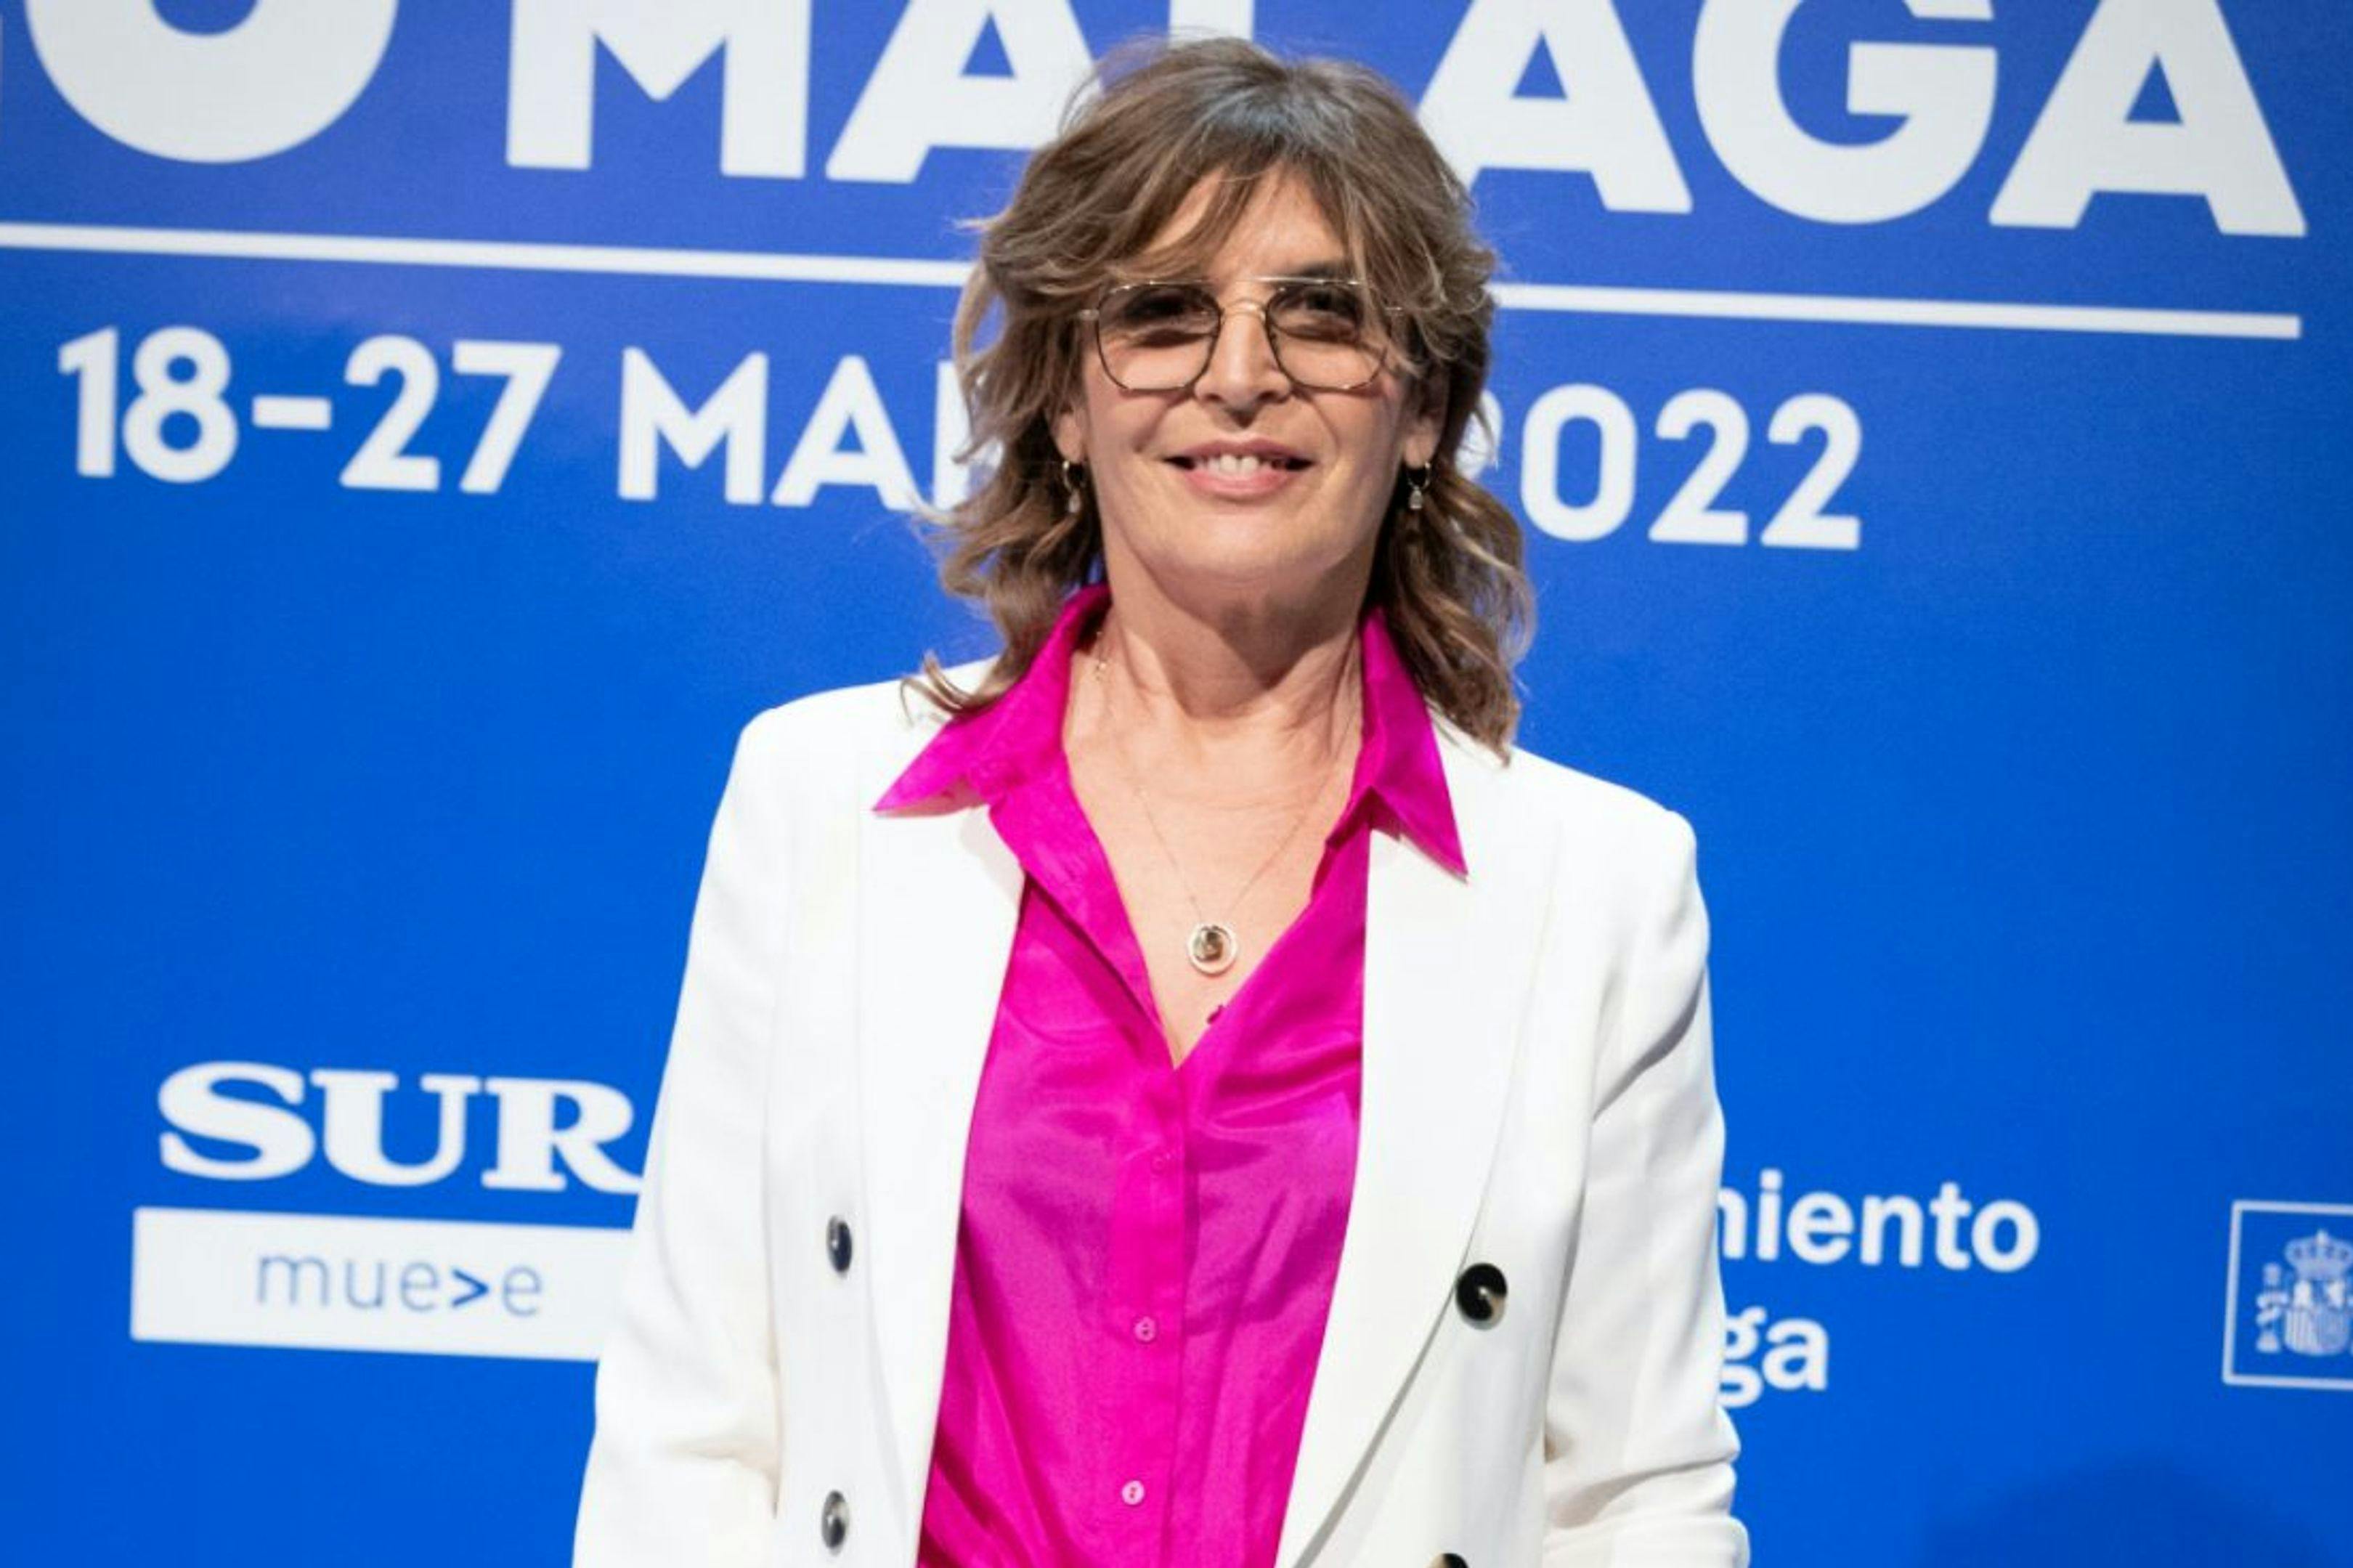 La directora María Ripoll, durante el Festival de Málaga de 2022.